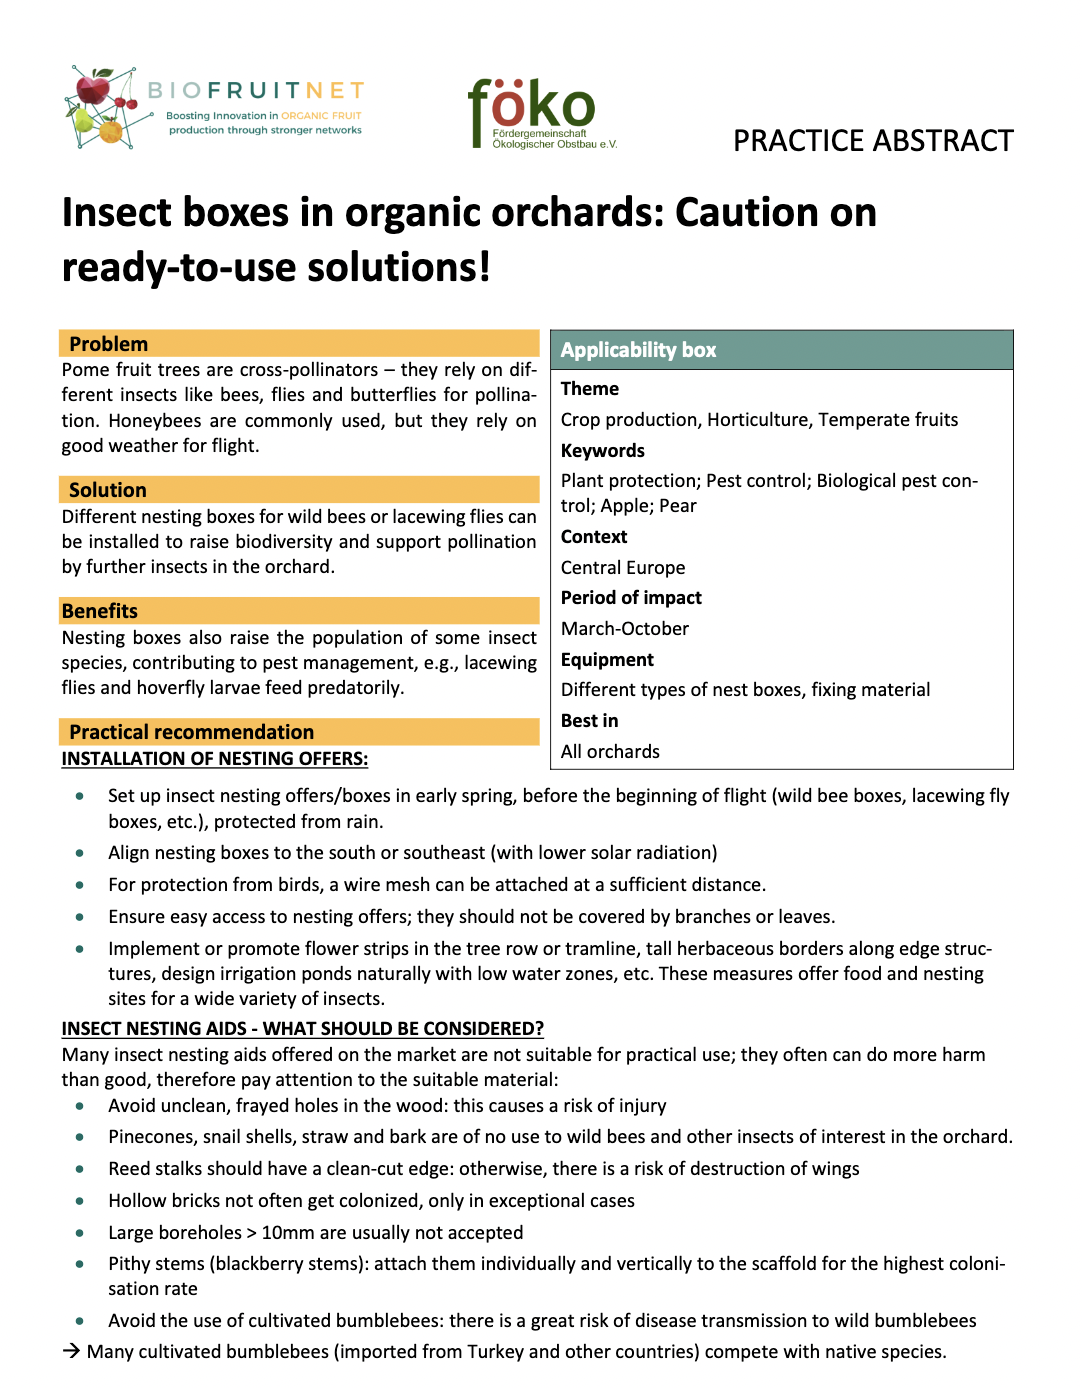 Boîtes à insectes dans les vergers bio : Attention aux solutions prêtes à l'emploi ! (Résumé pratique BIOFRUITNET)